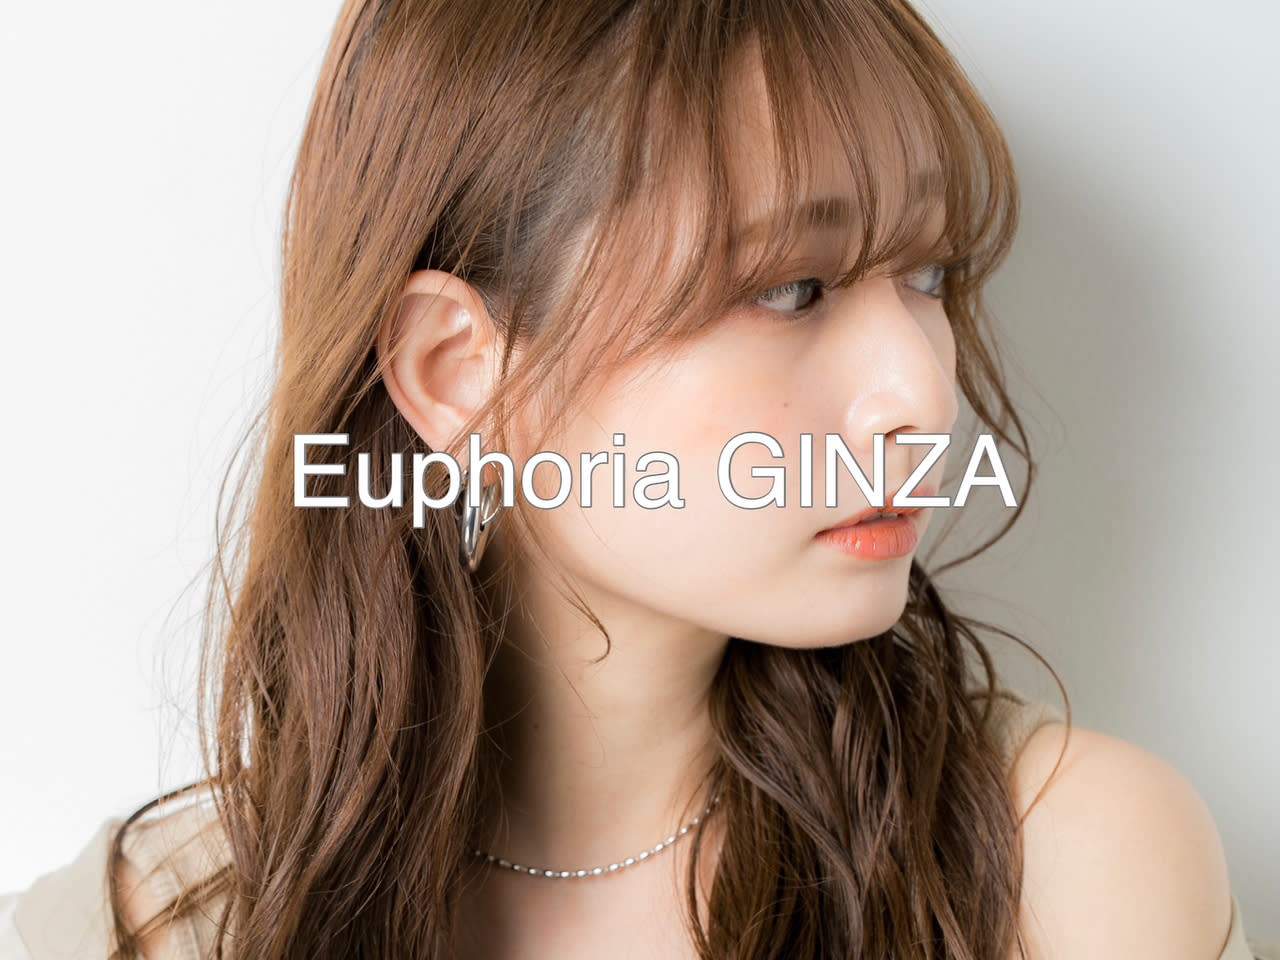 Euphoria 銀座【ユーフォリア ギンザ】のアイキャッチ画像